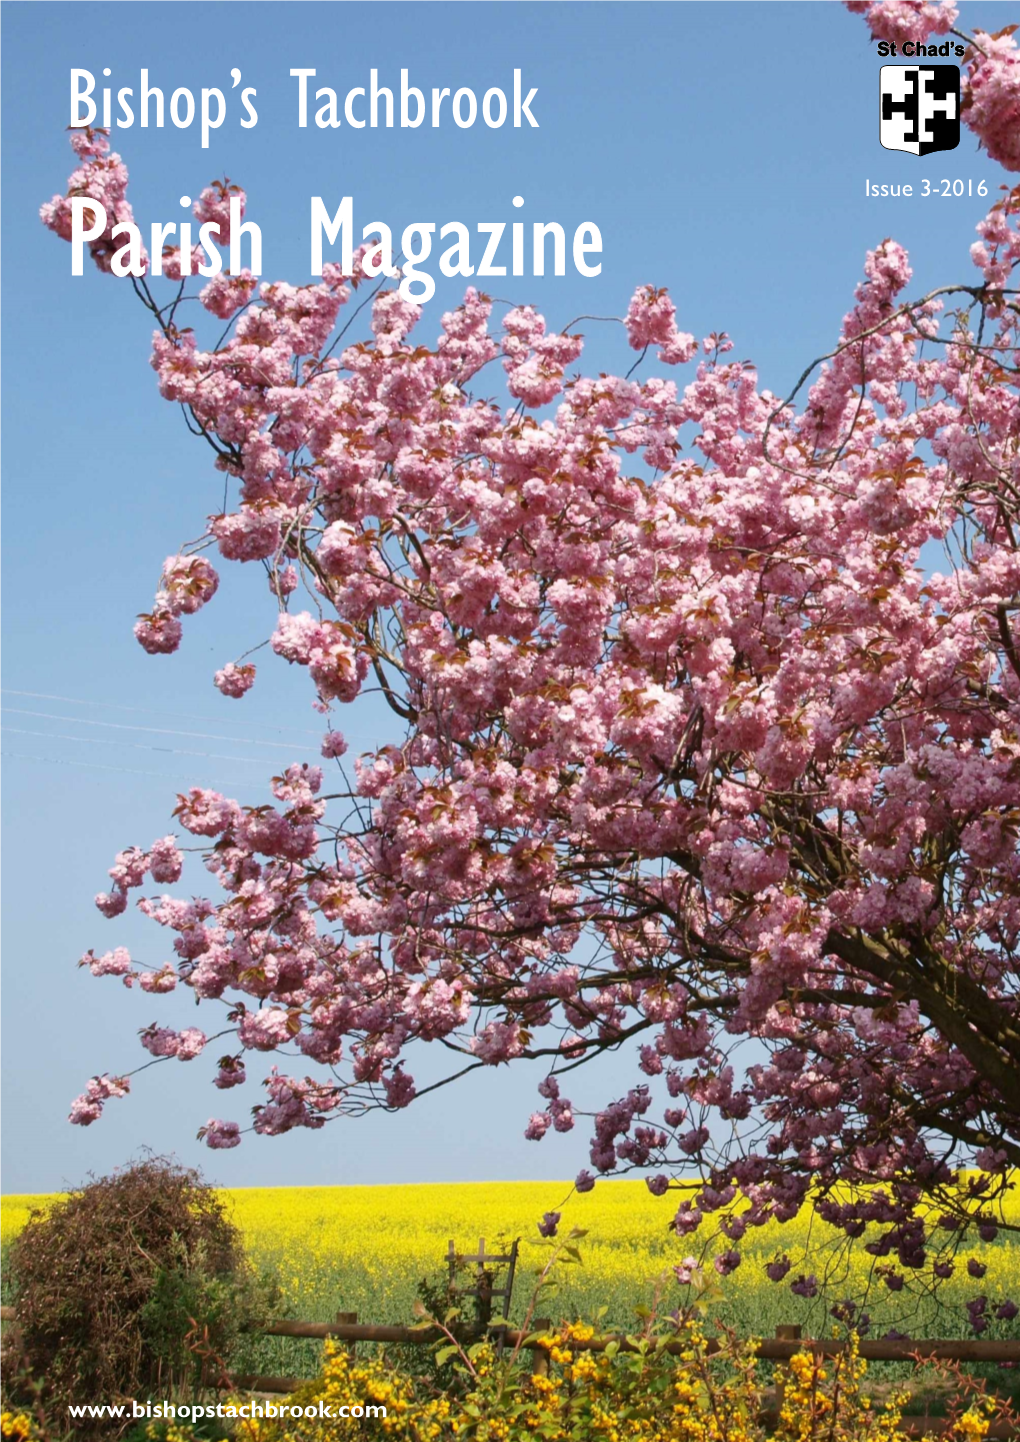 Parish Magazine Issue 3-2016